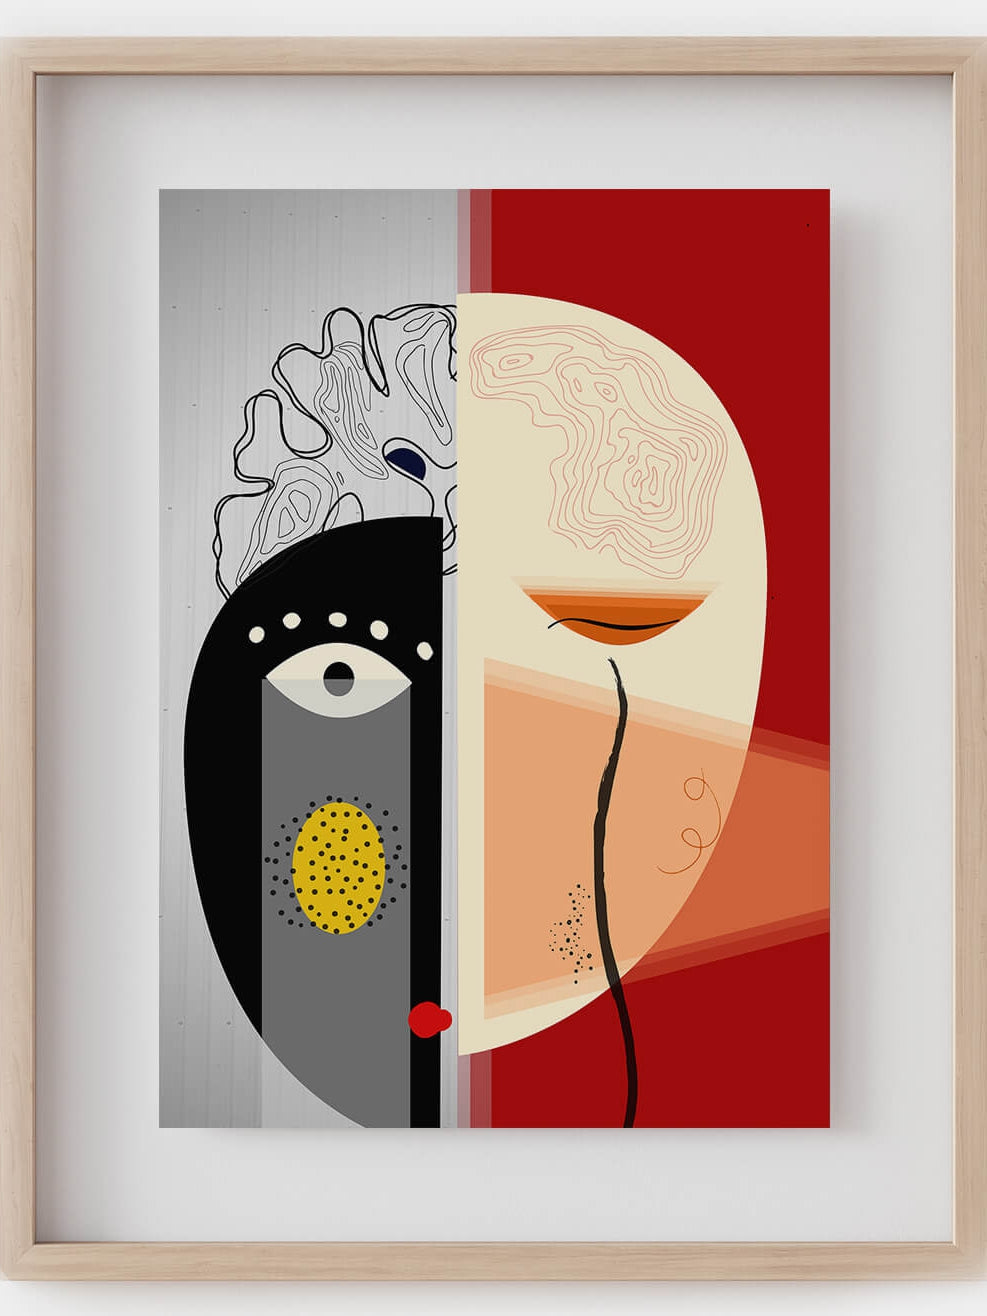 brain anatomy modern art print-Bauhaus poster-Geometric art-abstract wall art-minimalist art-German modernism-neurologist neurosurgeon gift